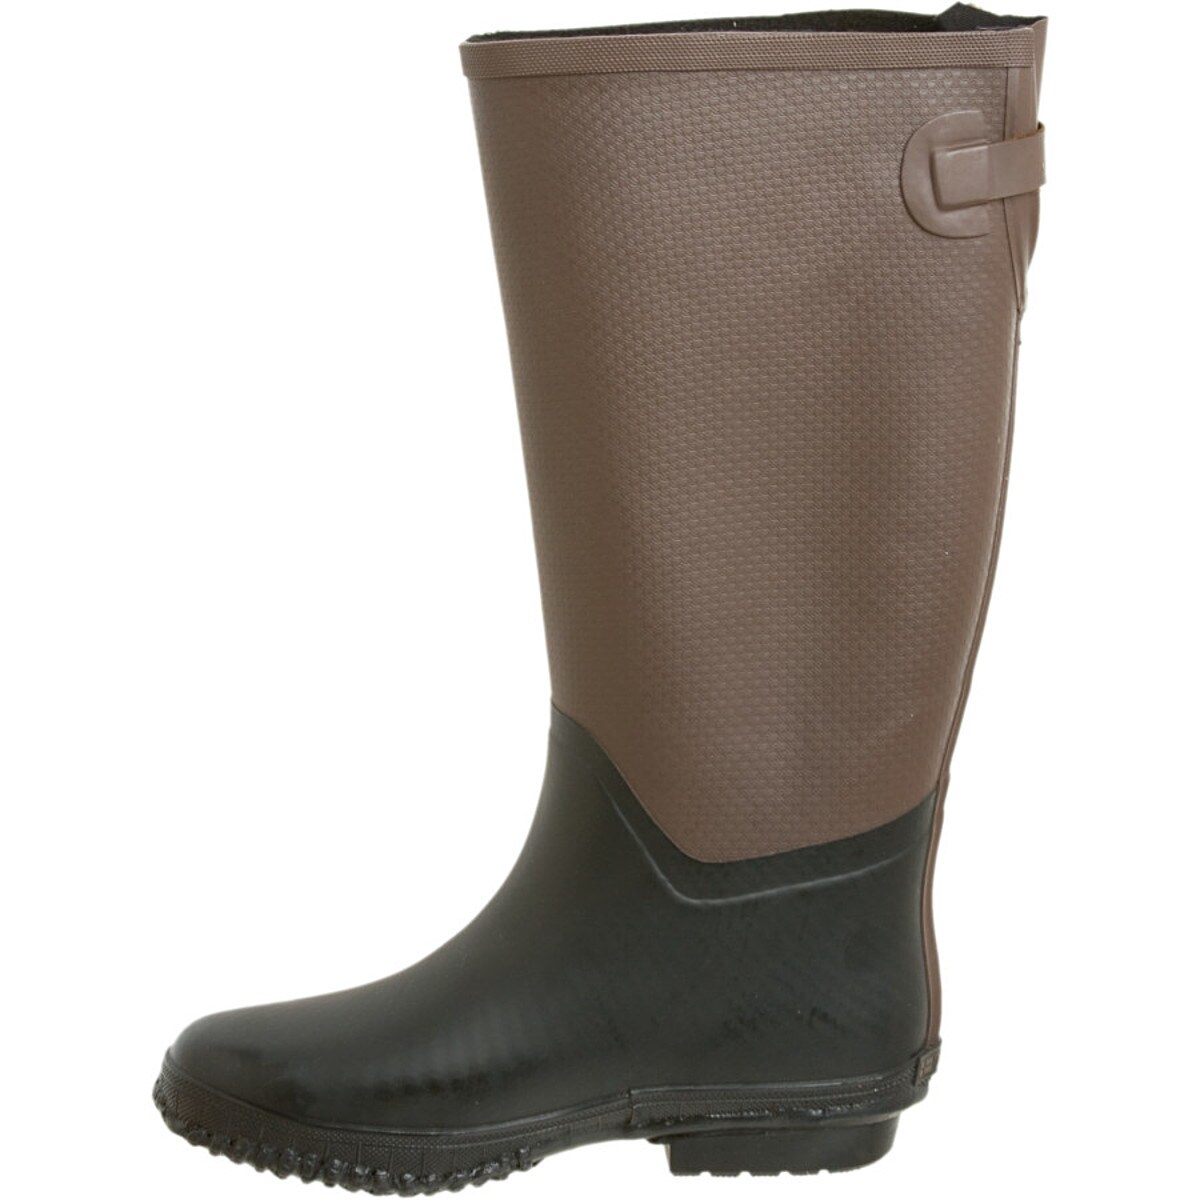 Tretorn Emelie Rain Boot - Women's - Footwear